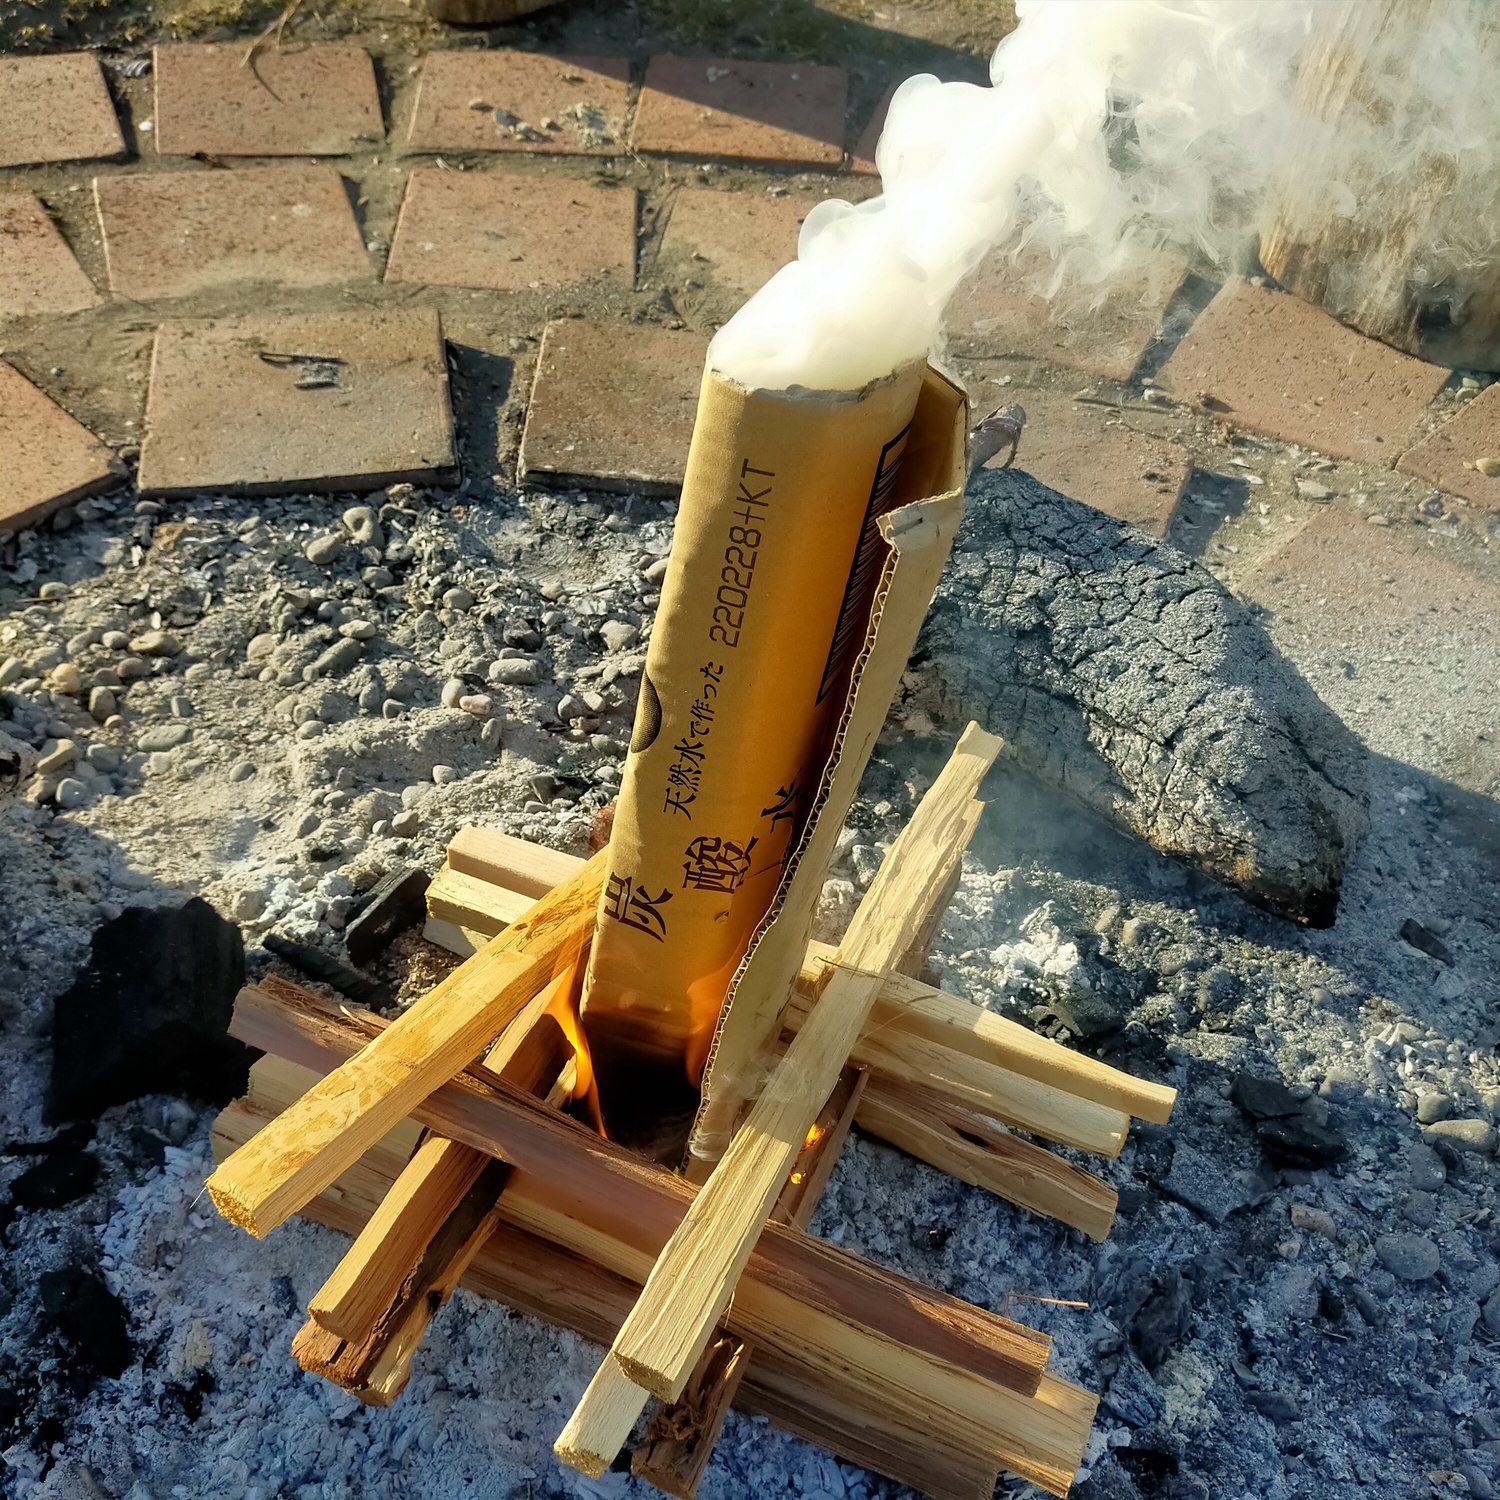 井桁に組んだ薪の中央に円筒形の段ボールを刺した状態。下部から炎が、上部から煙が出ている